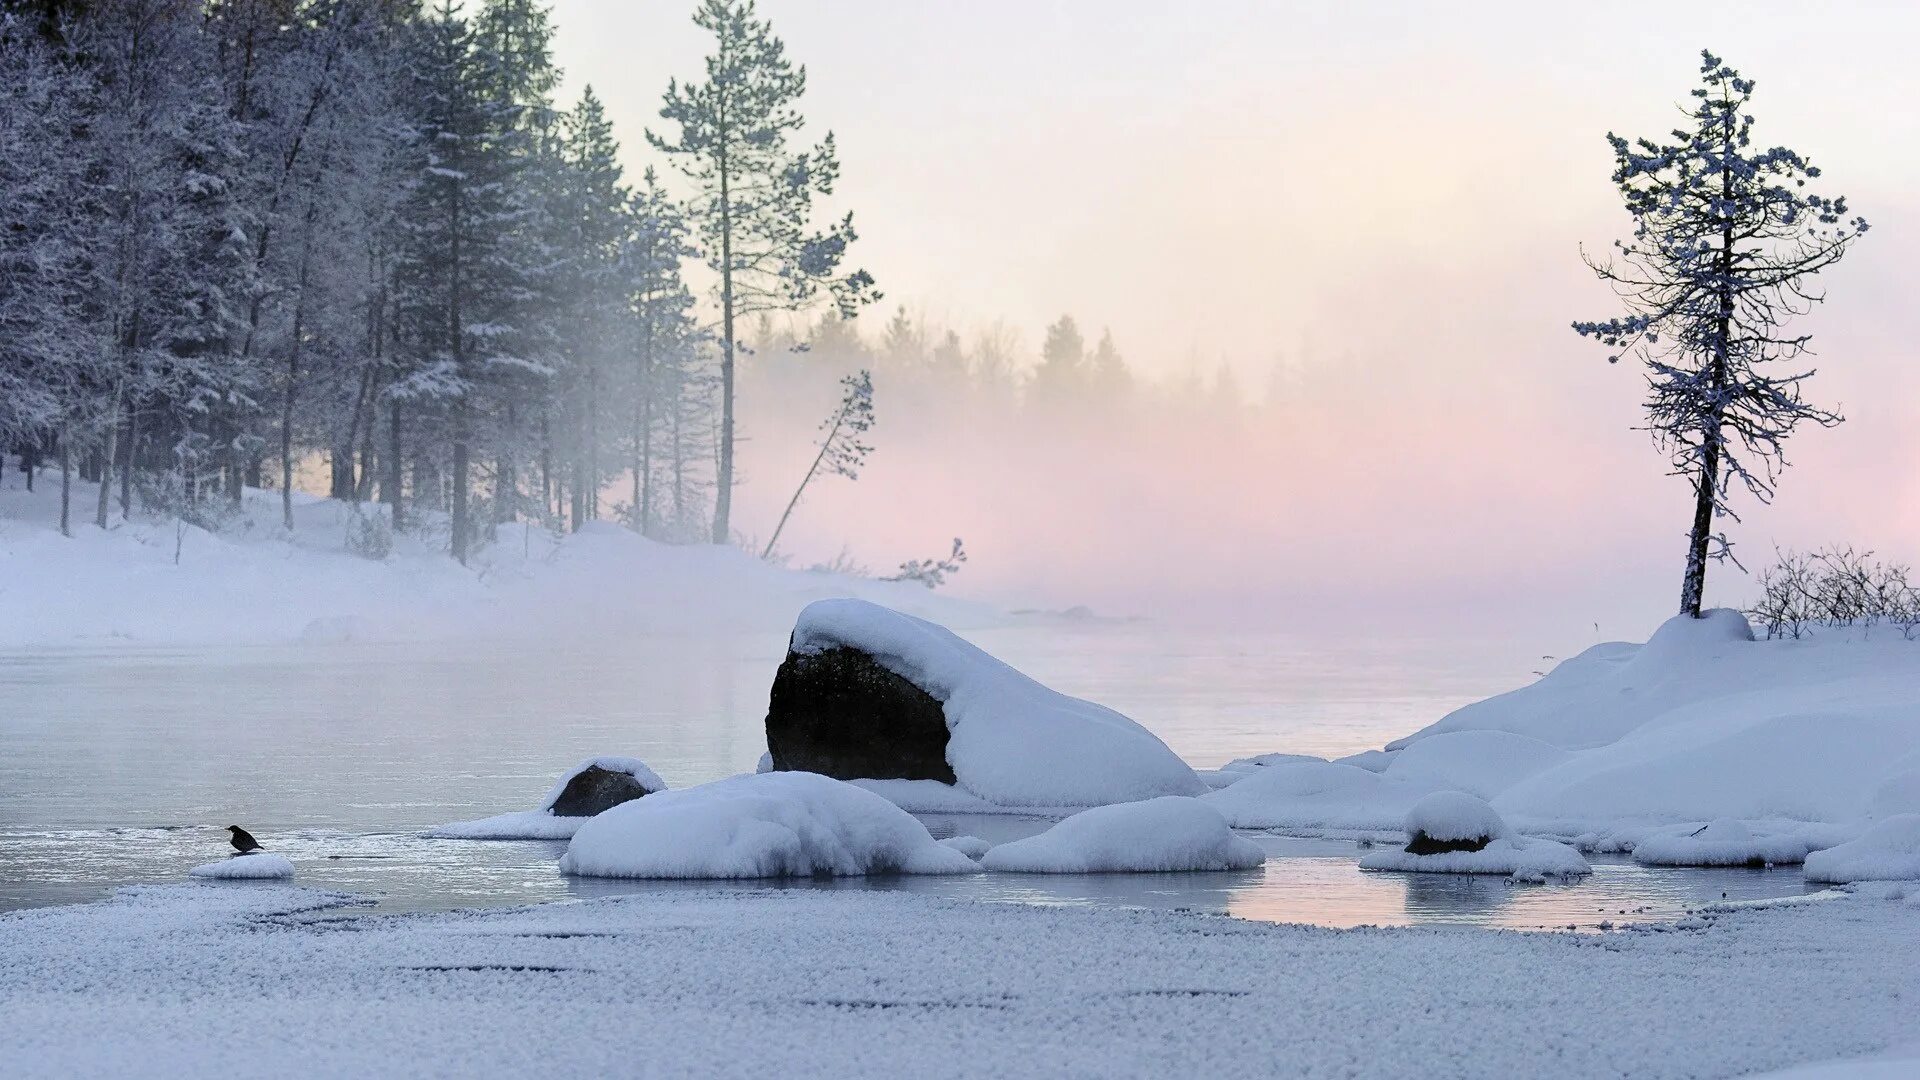 Финляндия пейзажи. Лед в лесу. Озеро в лесу зимой. Река зимой. Сугроб сугробы туман